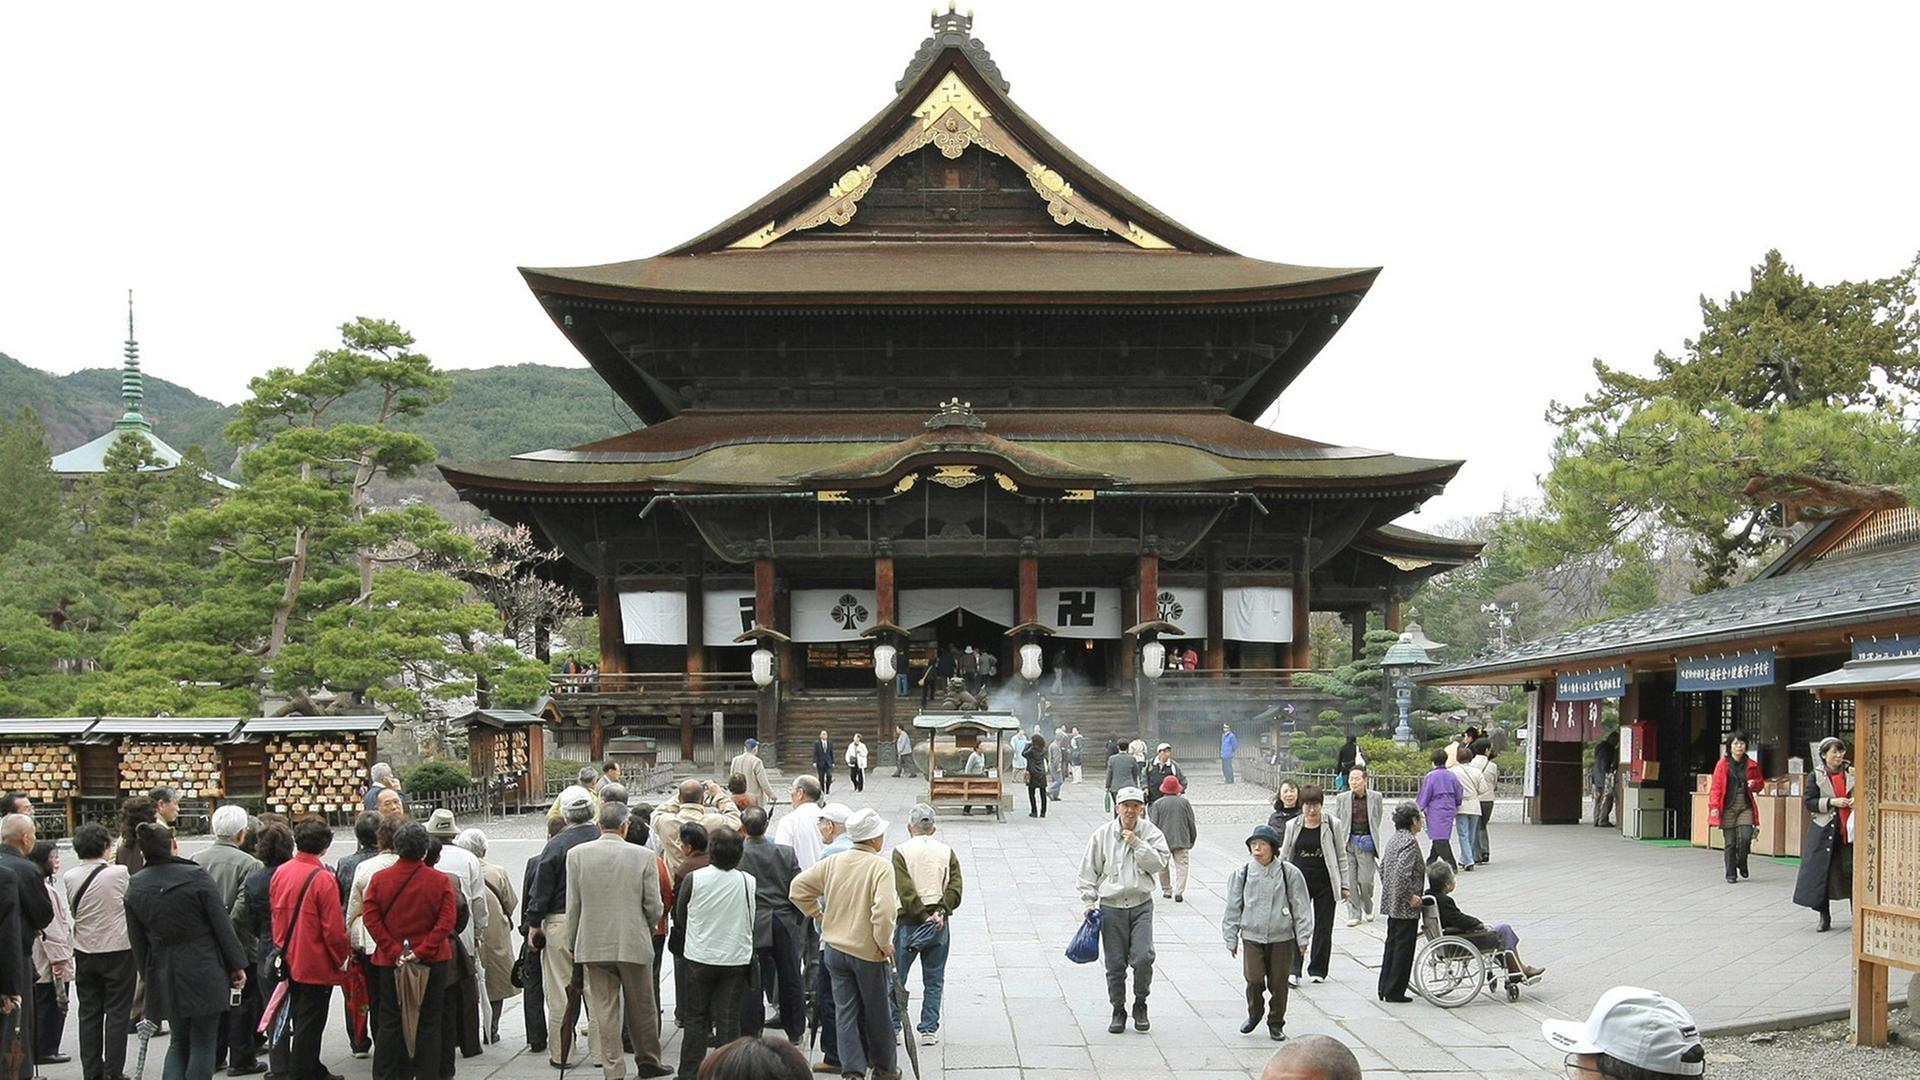 Menschen besuchen den buddhistischen Zenkoji-Tempel in der japanischen Stadt Nagano.